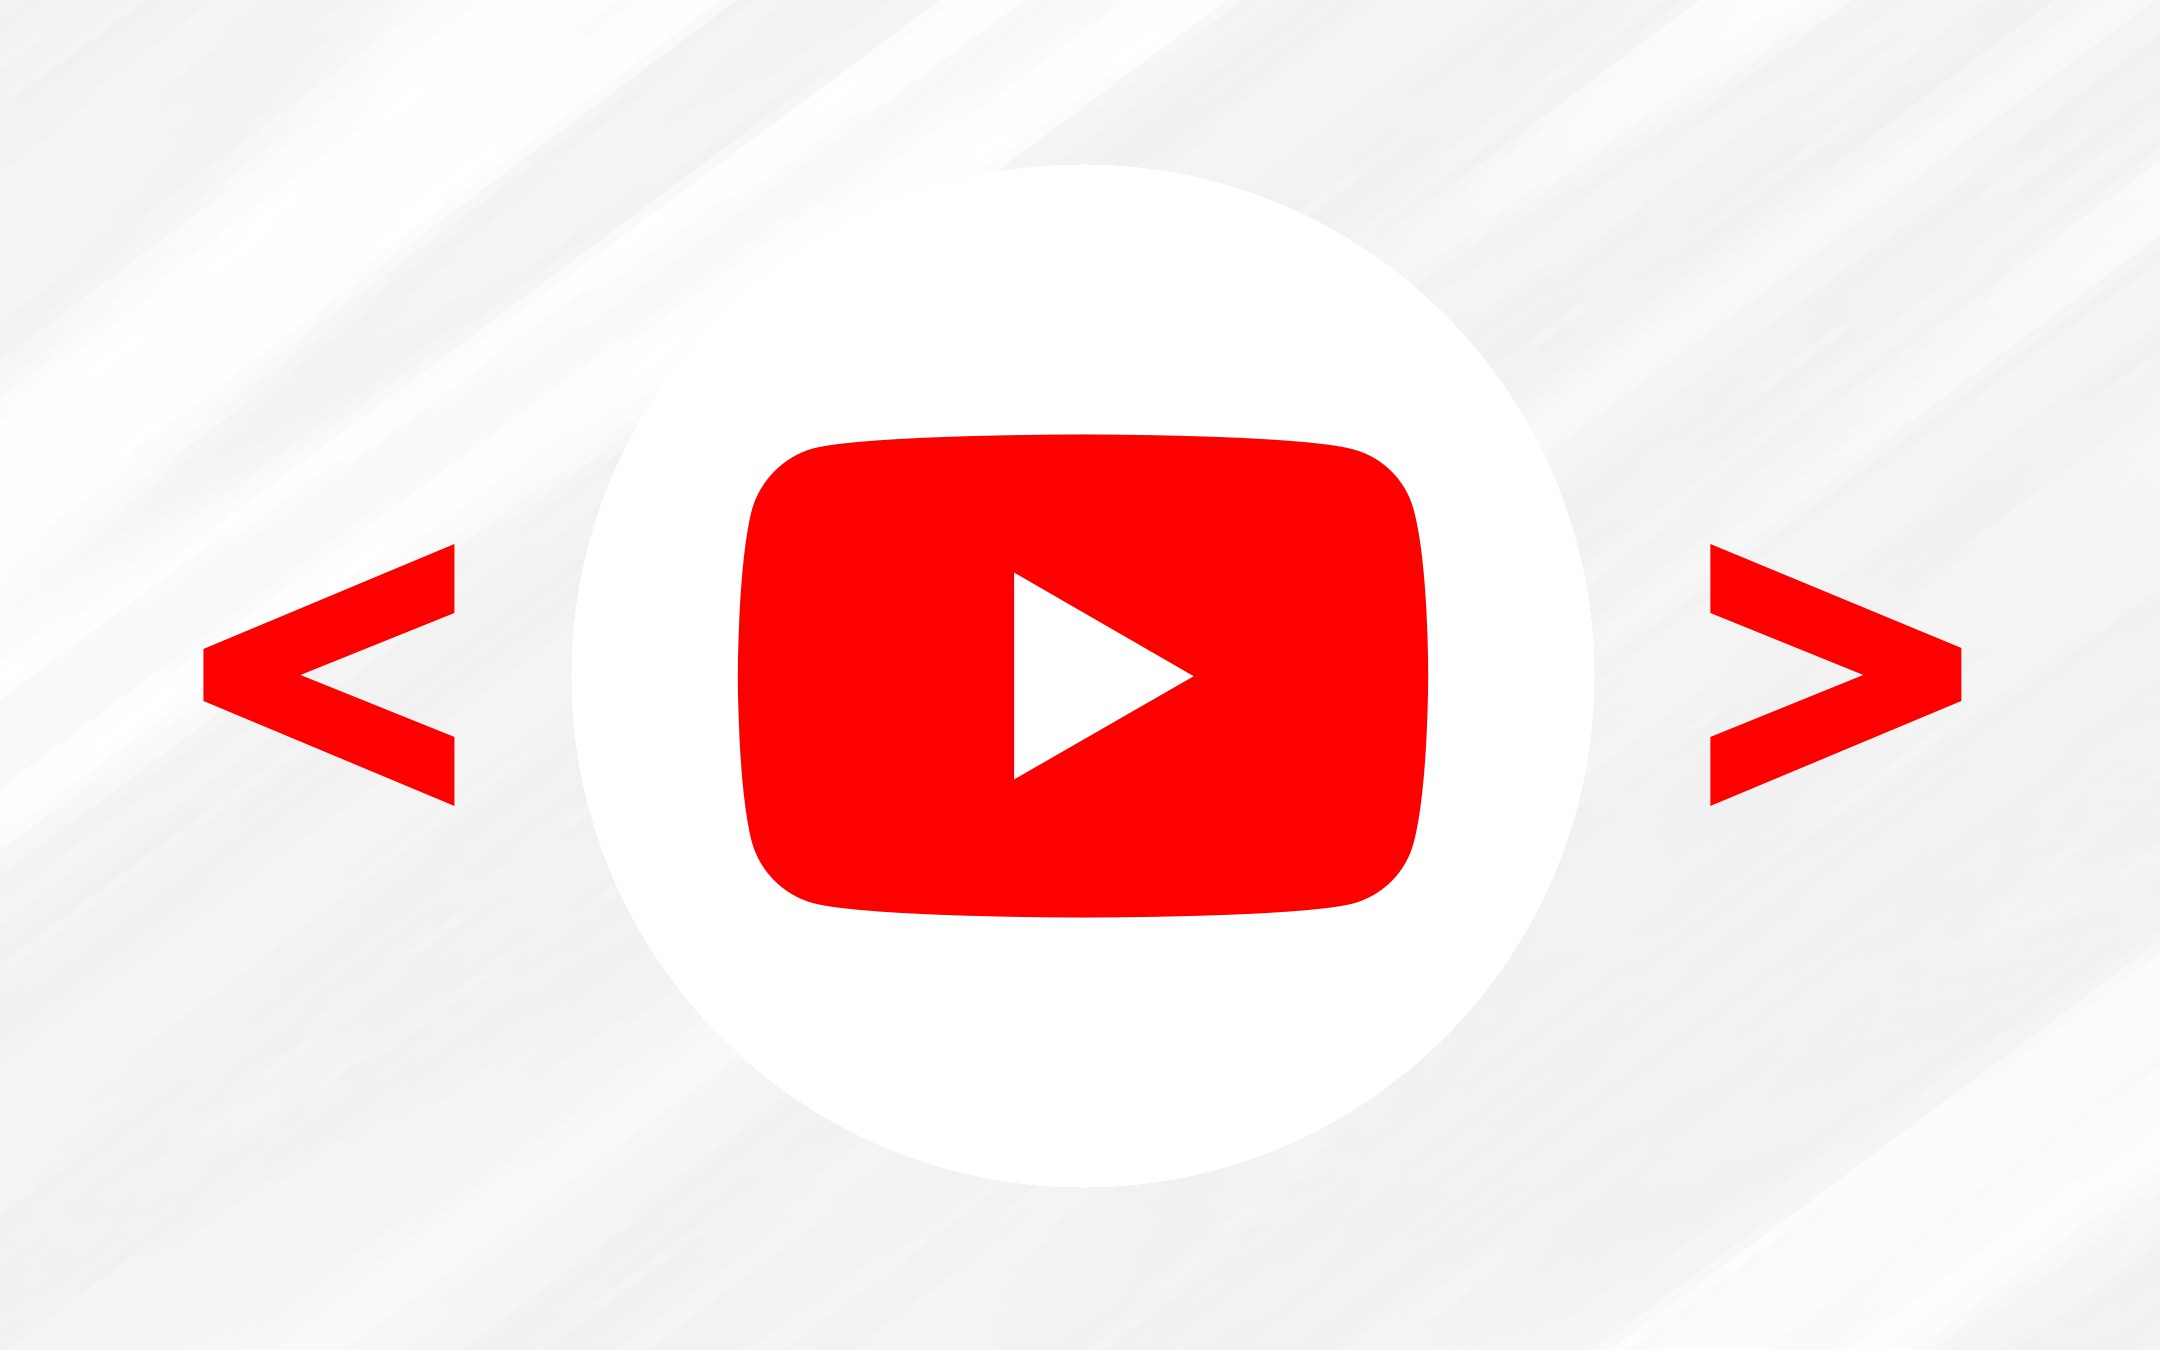 YouTube, nuova opzione per genitori e bambini